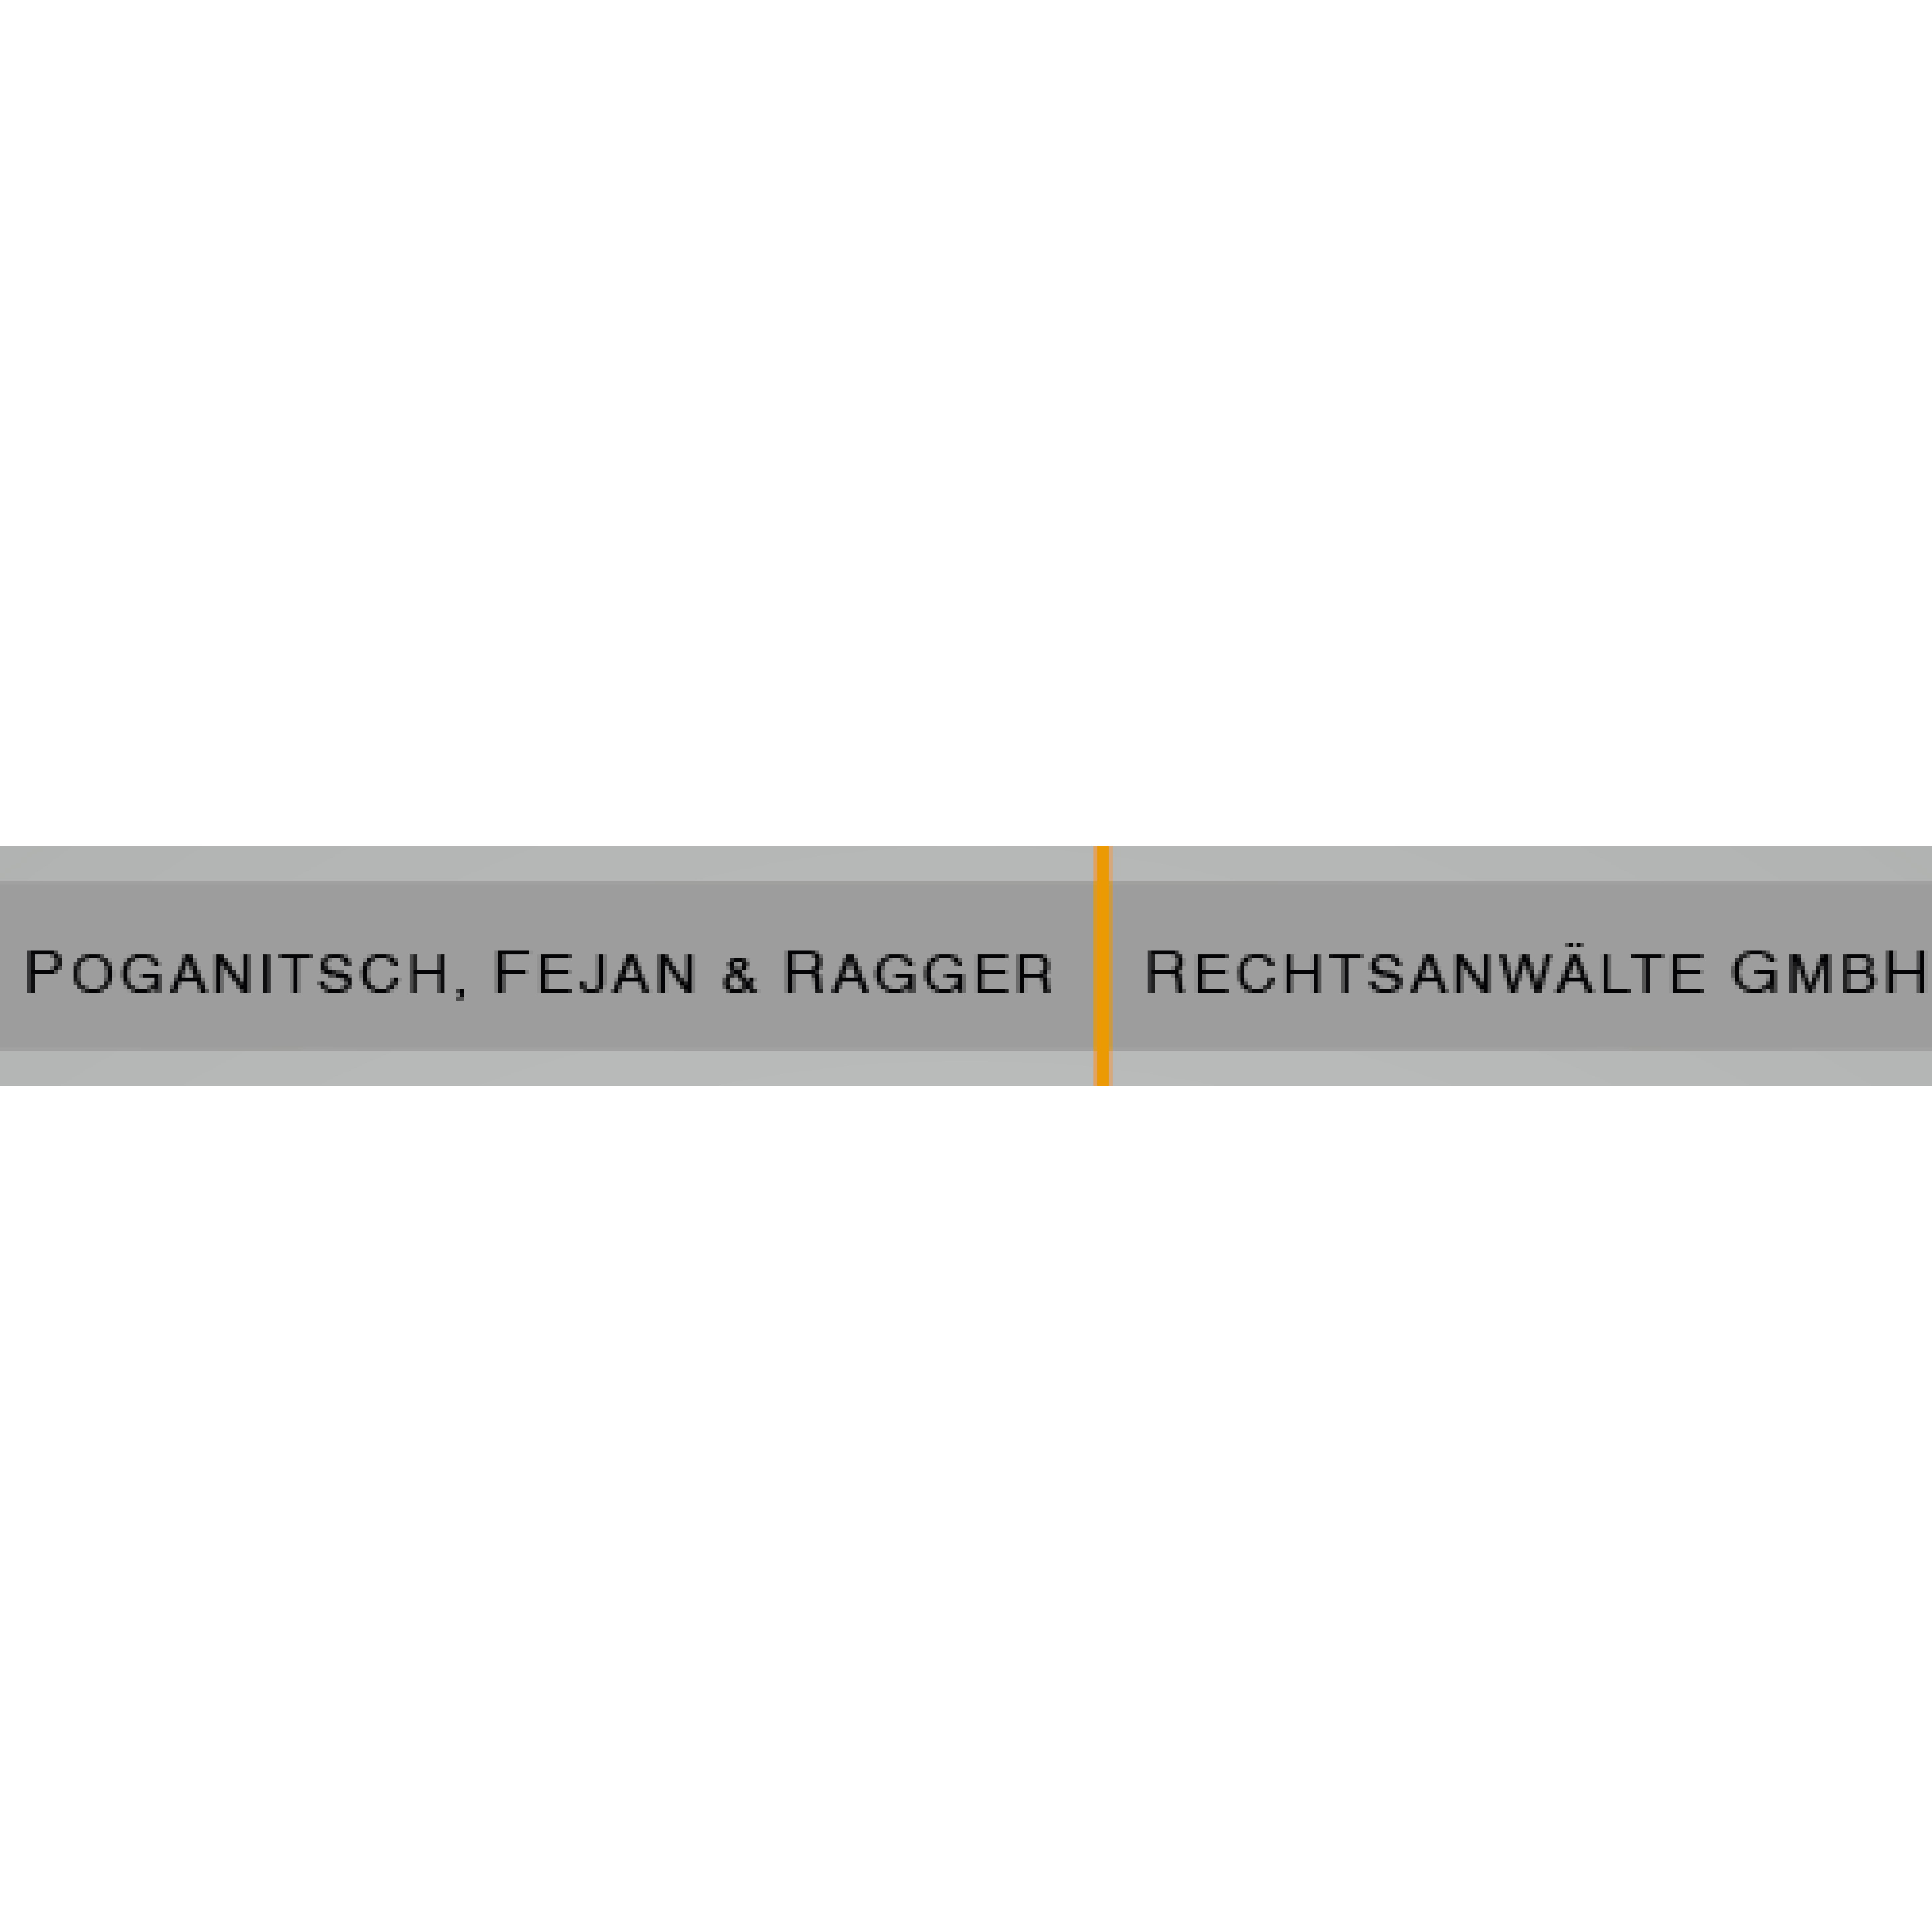 Poganitsch, Fejan & Ragger Rechtsanwälte GmbH Logo